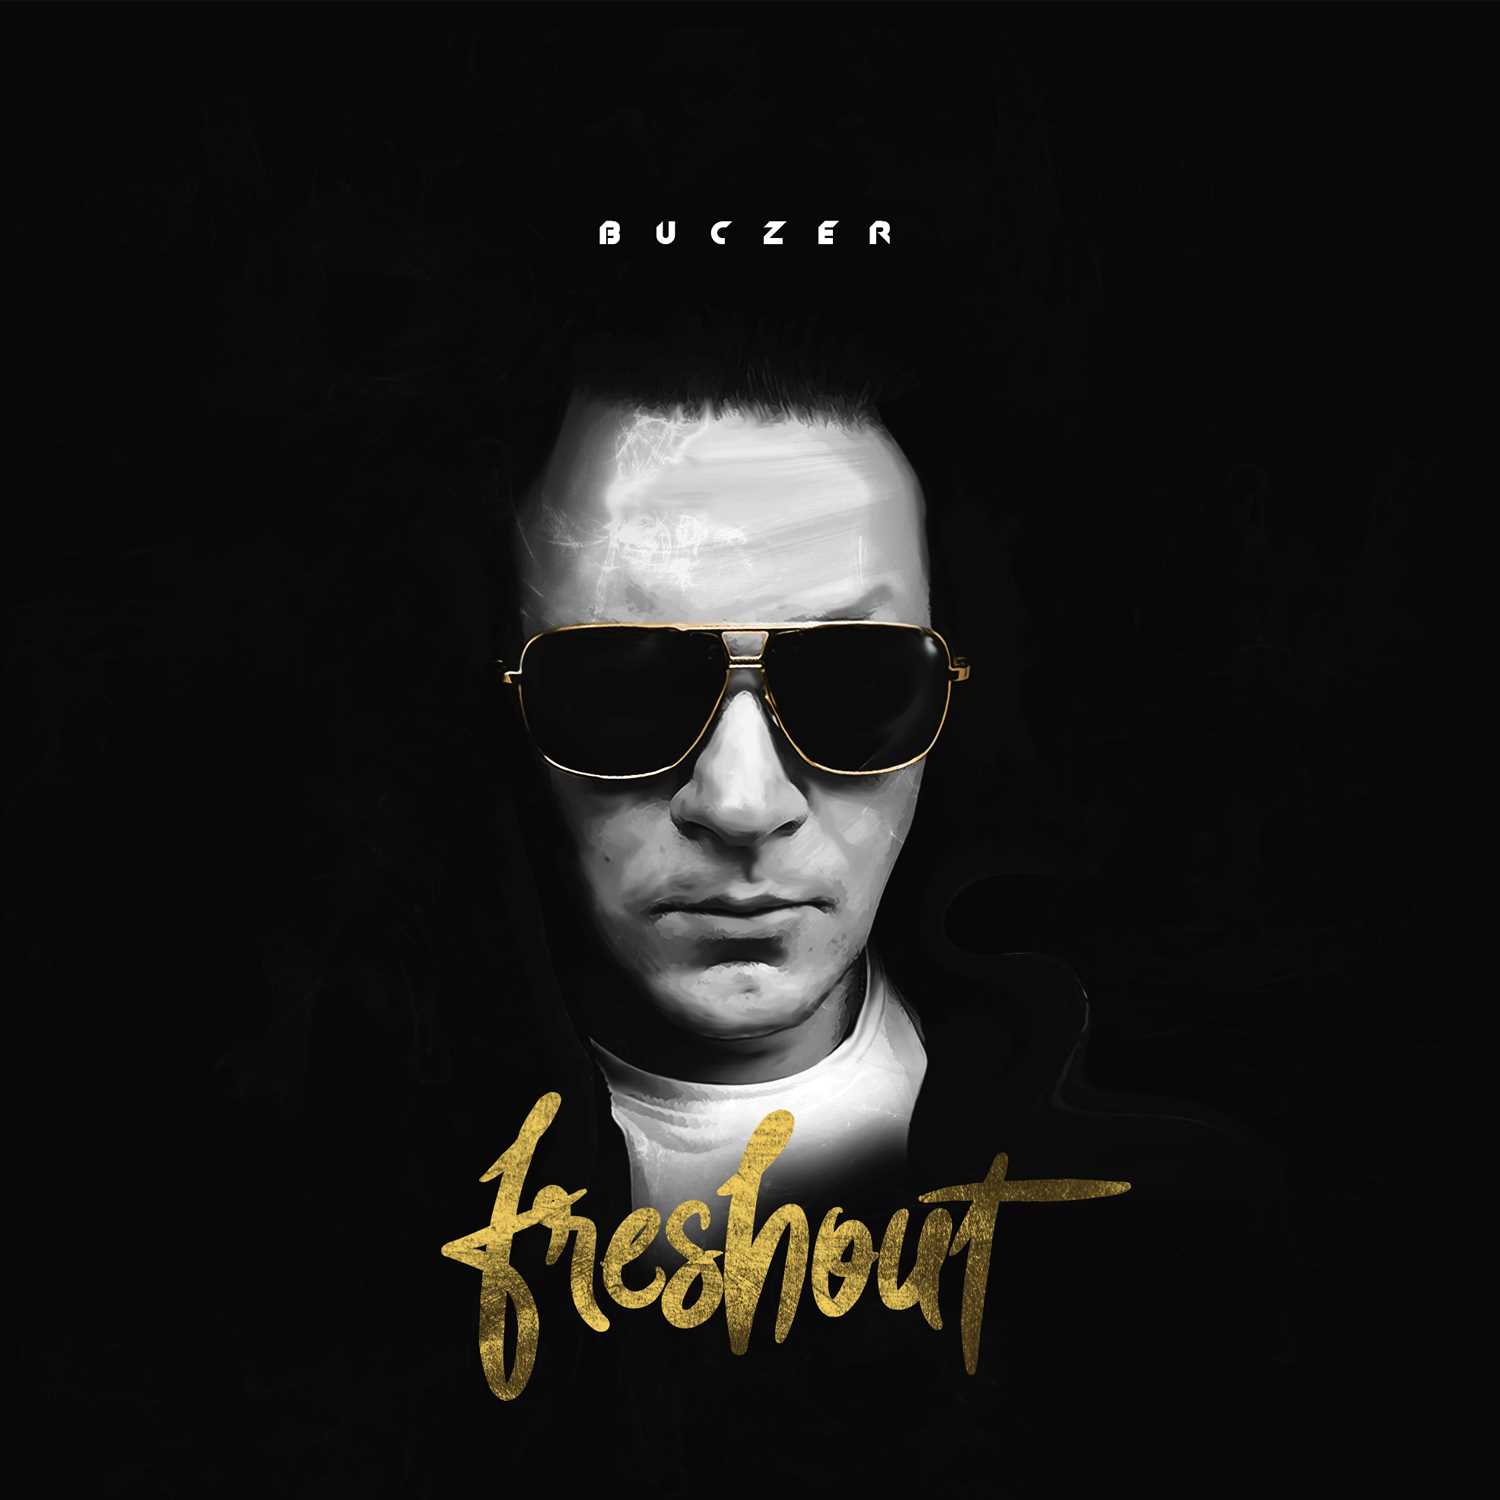 Buczer "Freshout" okładka płyty